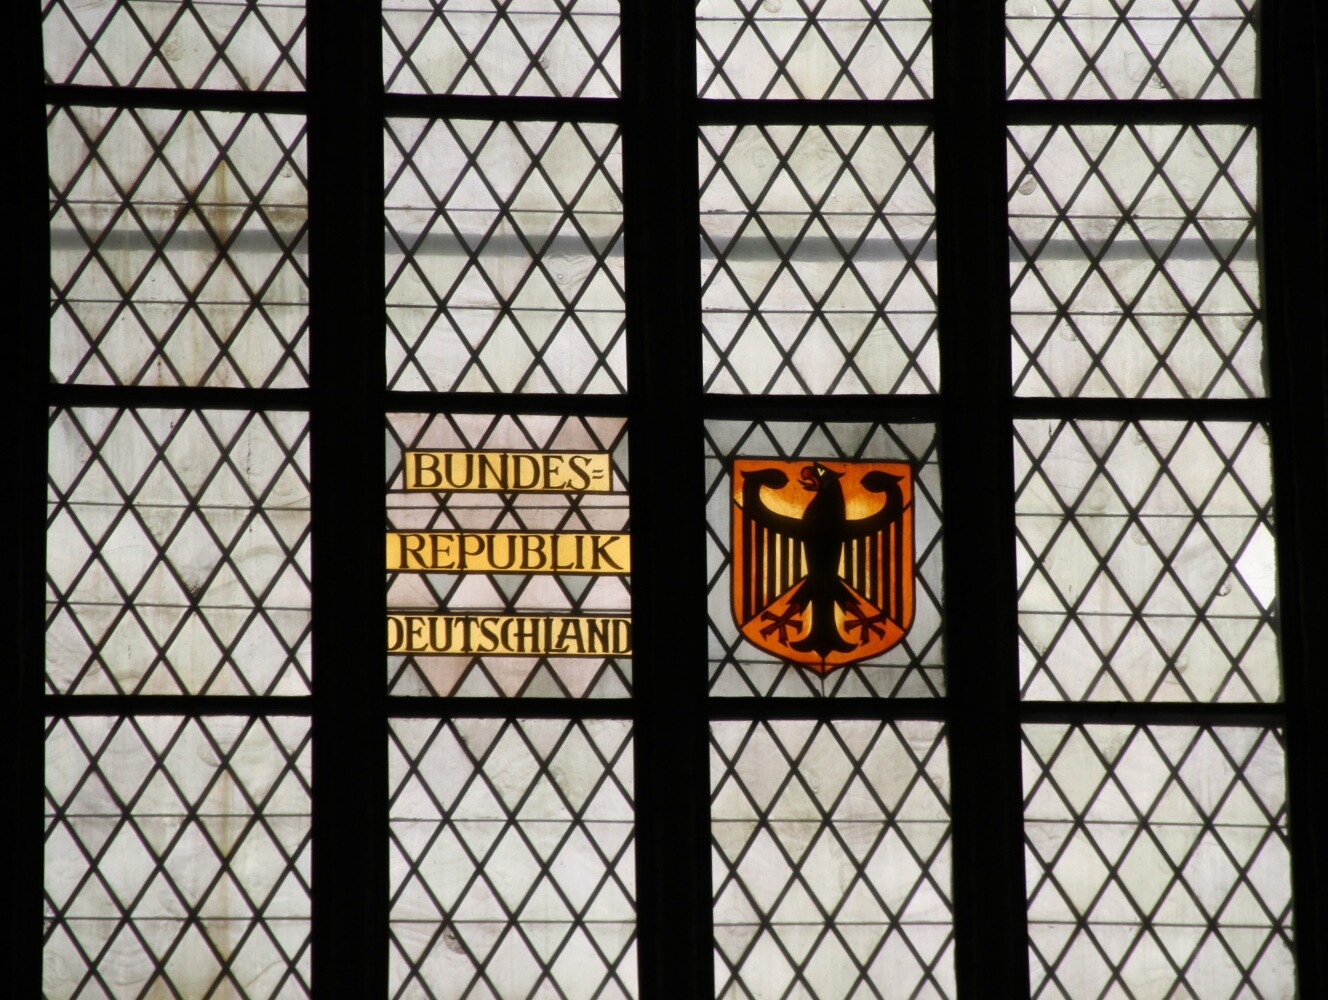 Kirchenfenster in Sankt Marien, Lübeck